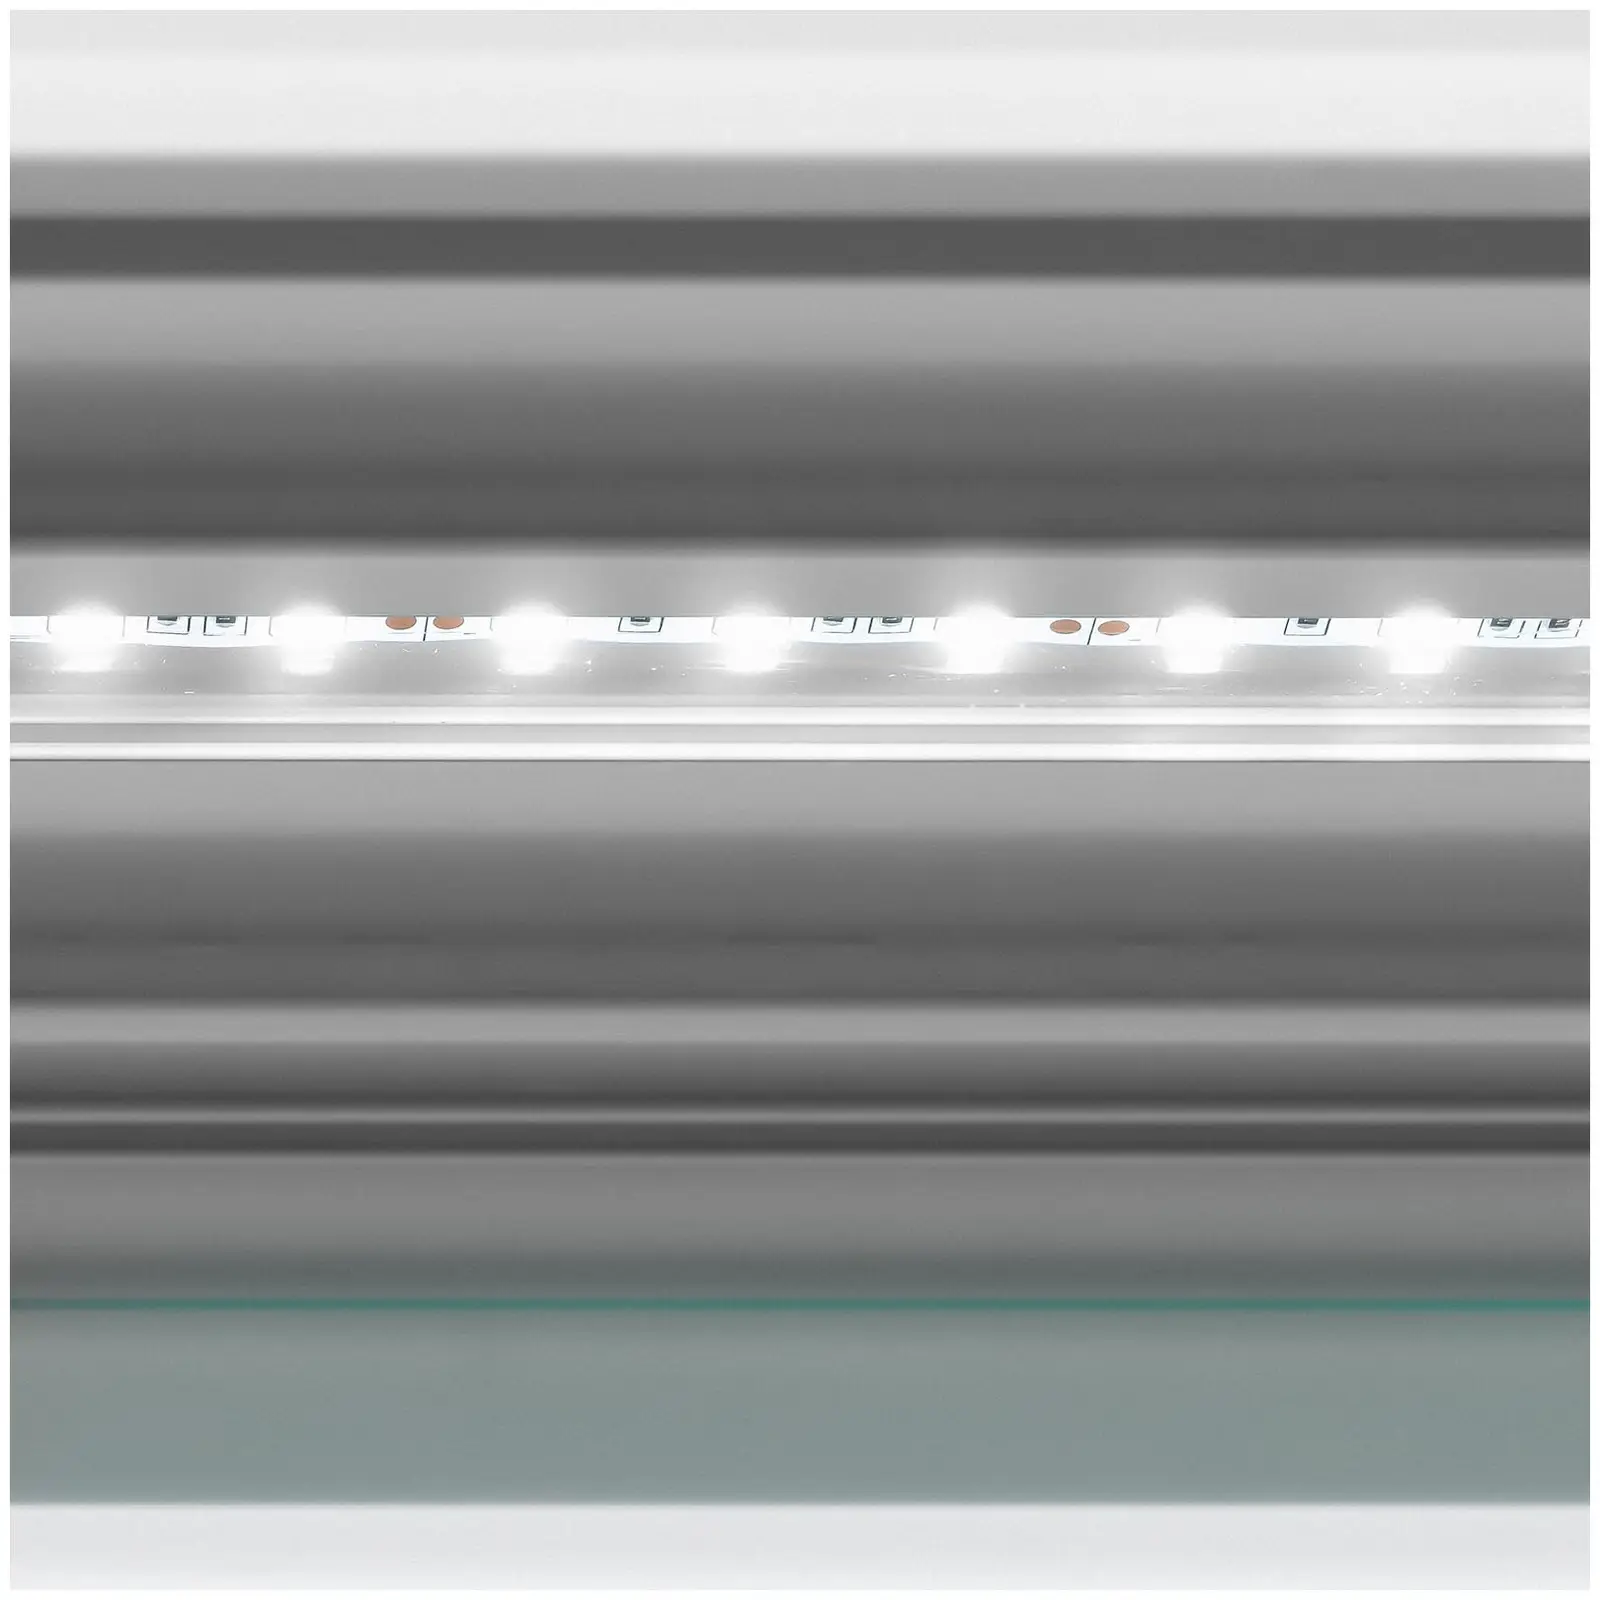 Banco vetrina gelato - 456 L - LED - 4 ruote - Verde chiaro, argento